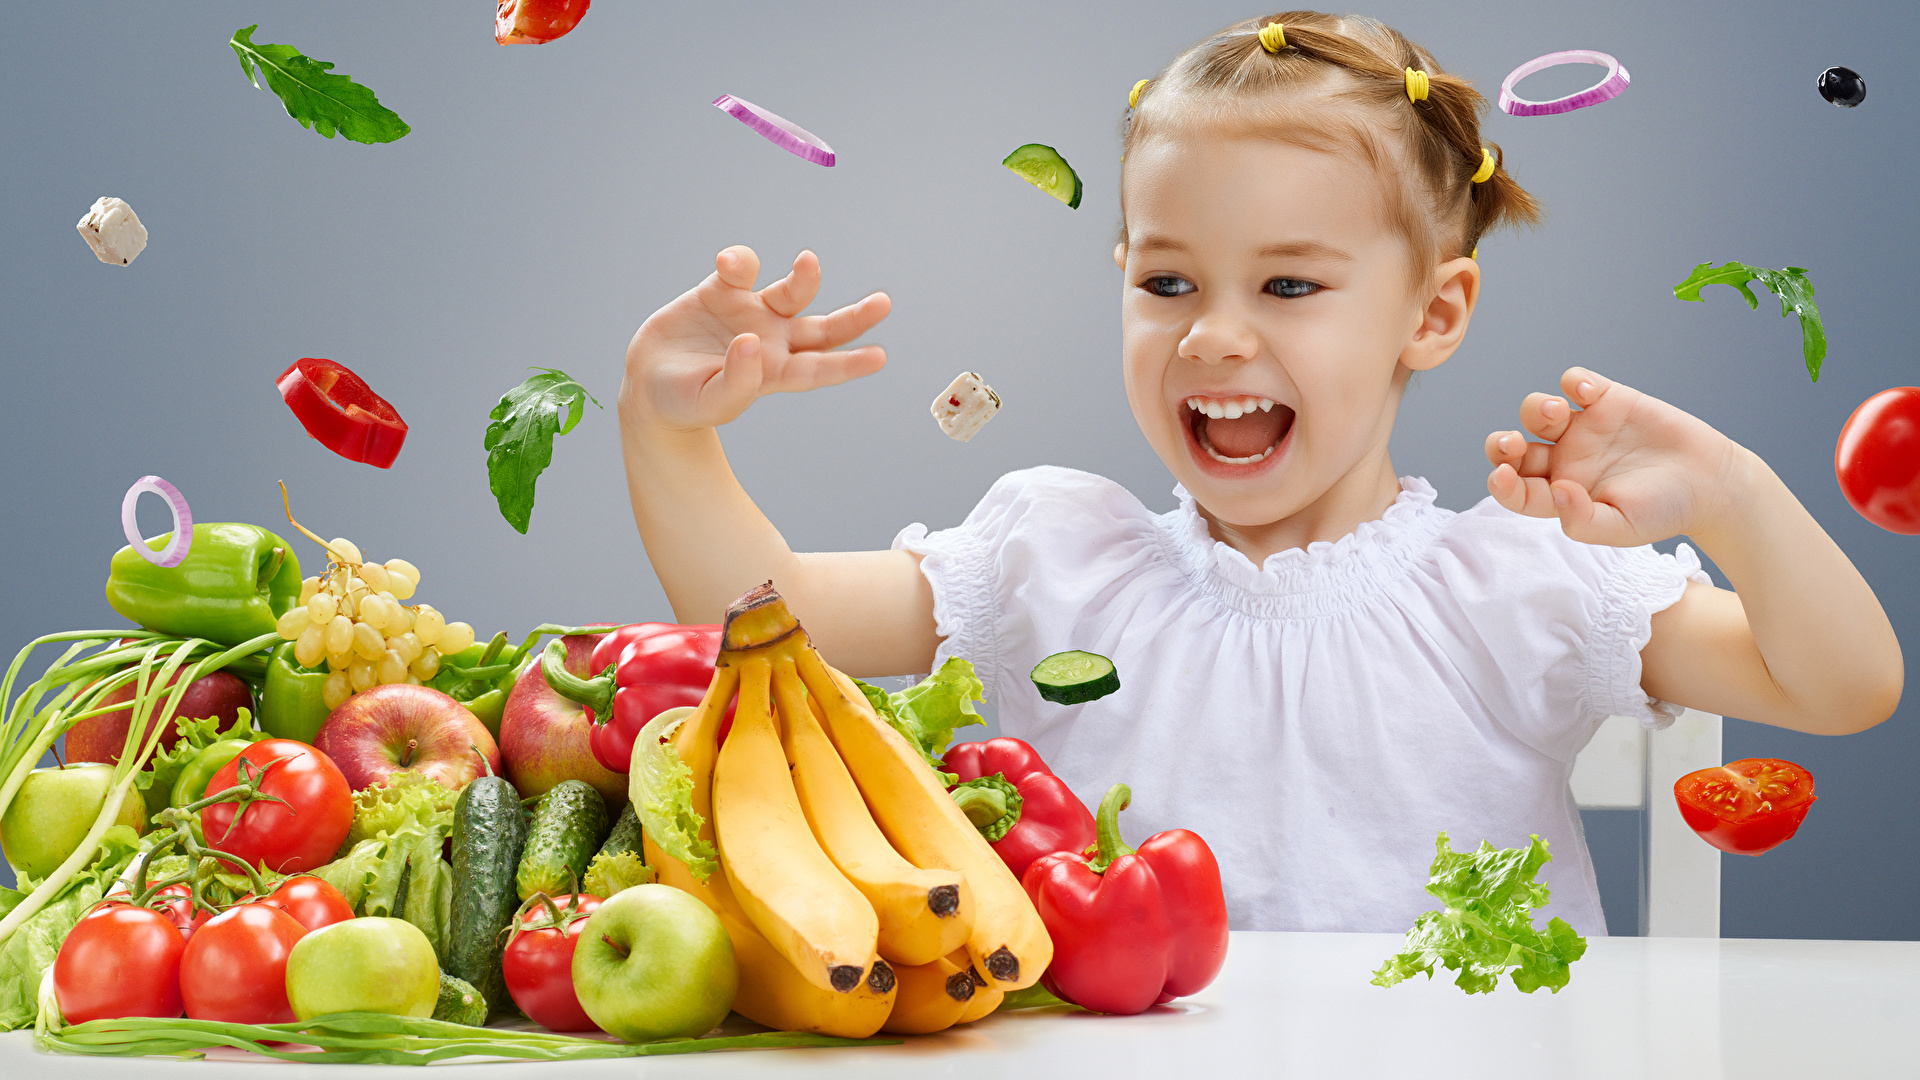 Để trẻ ăn nhiều chất xơ hơn, chế độ ăn trong ngày nên thay đổi đa dạng.